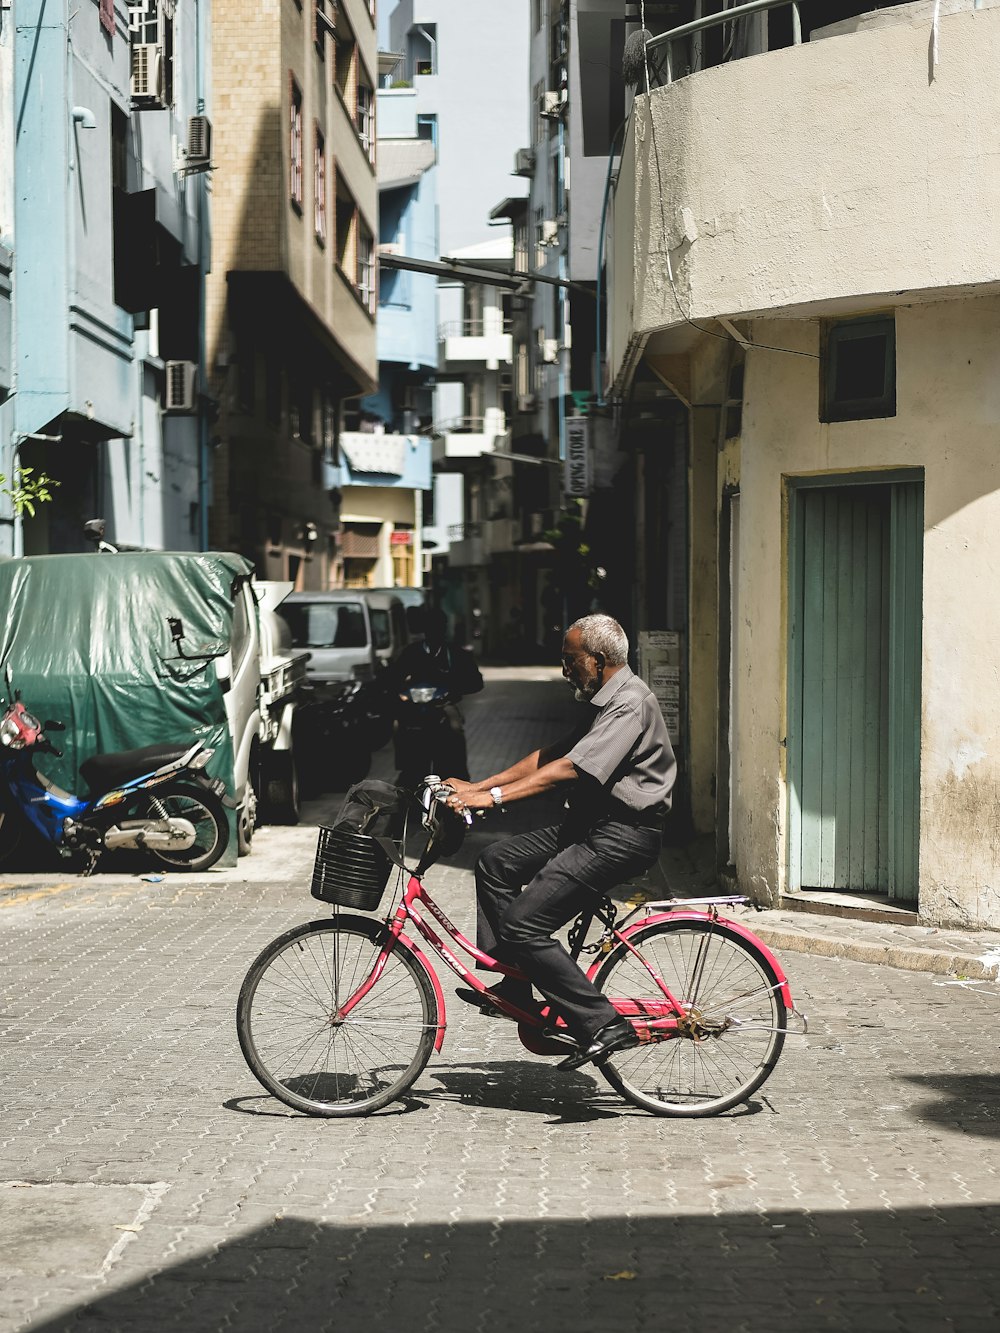 man riding bicycle on street during daytime